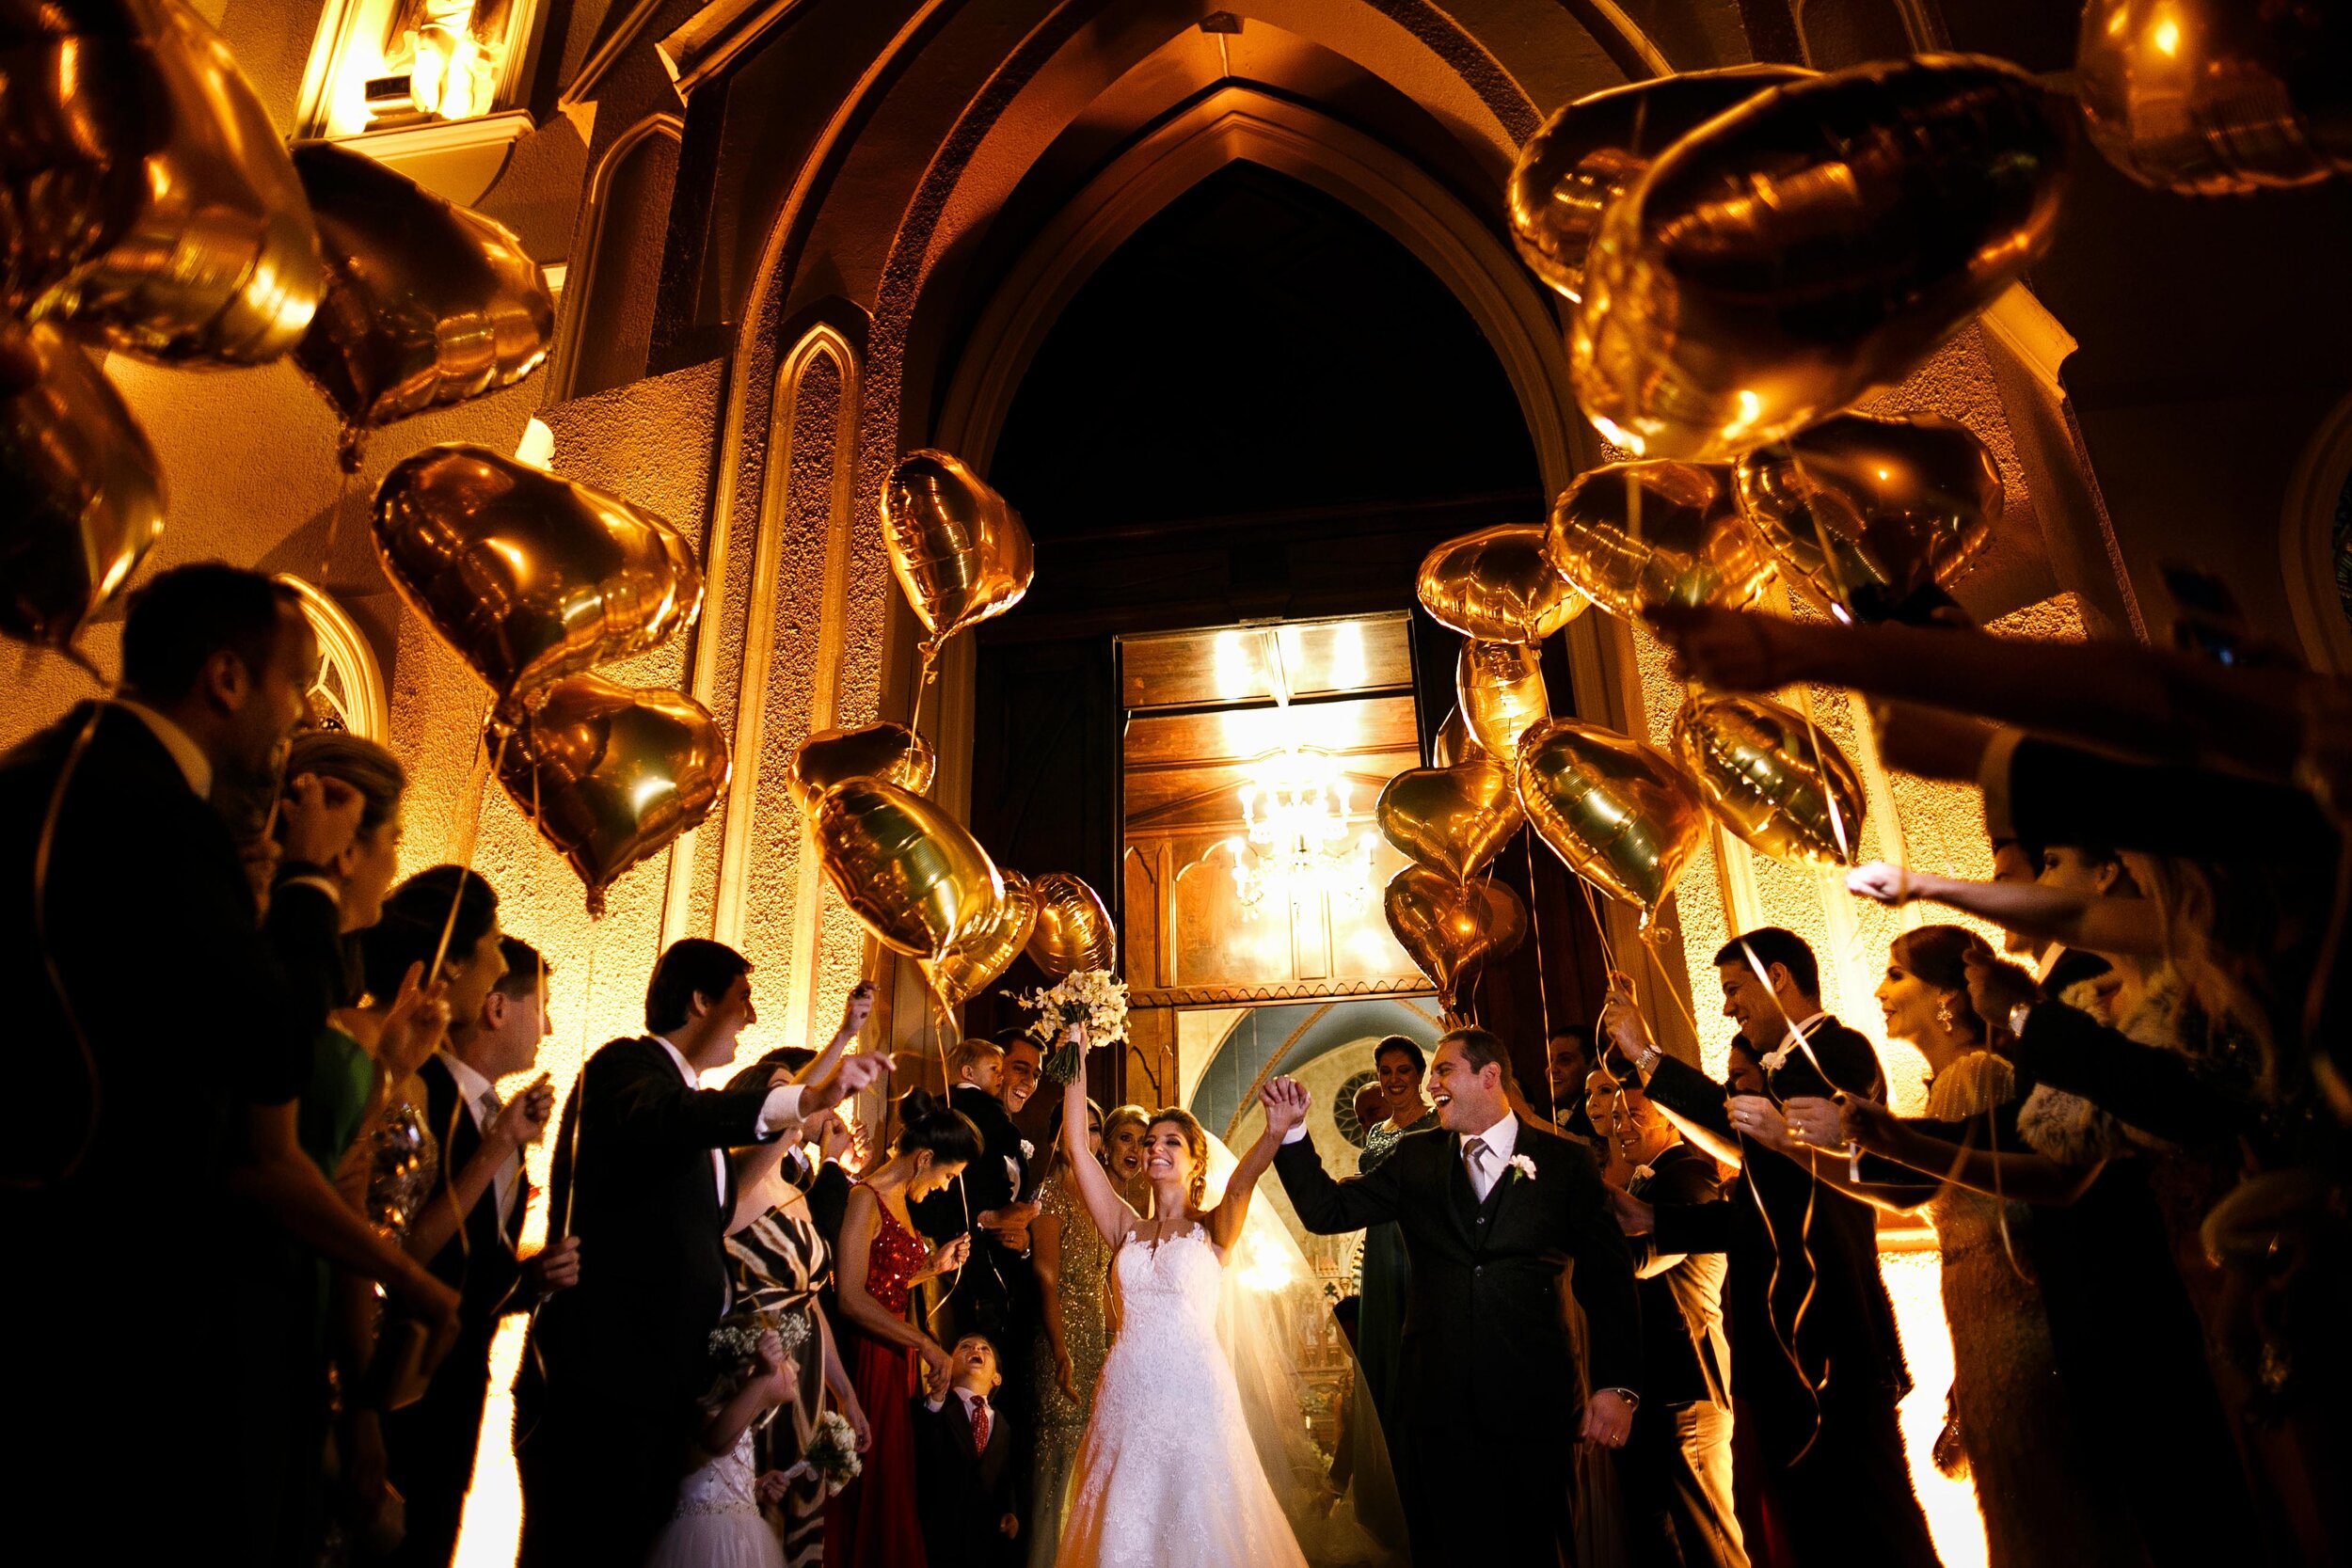 Cheng NV fotografo de casamento em Curitiba- Melhor fotografia do brasil - MIni casamento - Inspiração de decoração - 2020 - noiva - inesquecivel casamento_.57.jpg